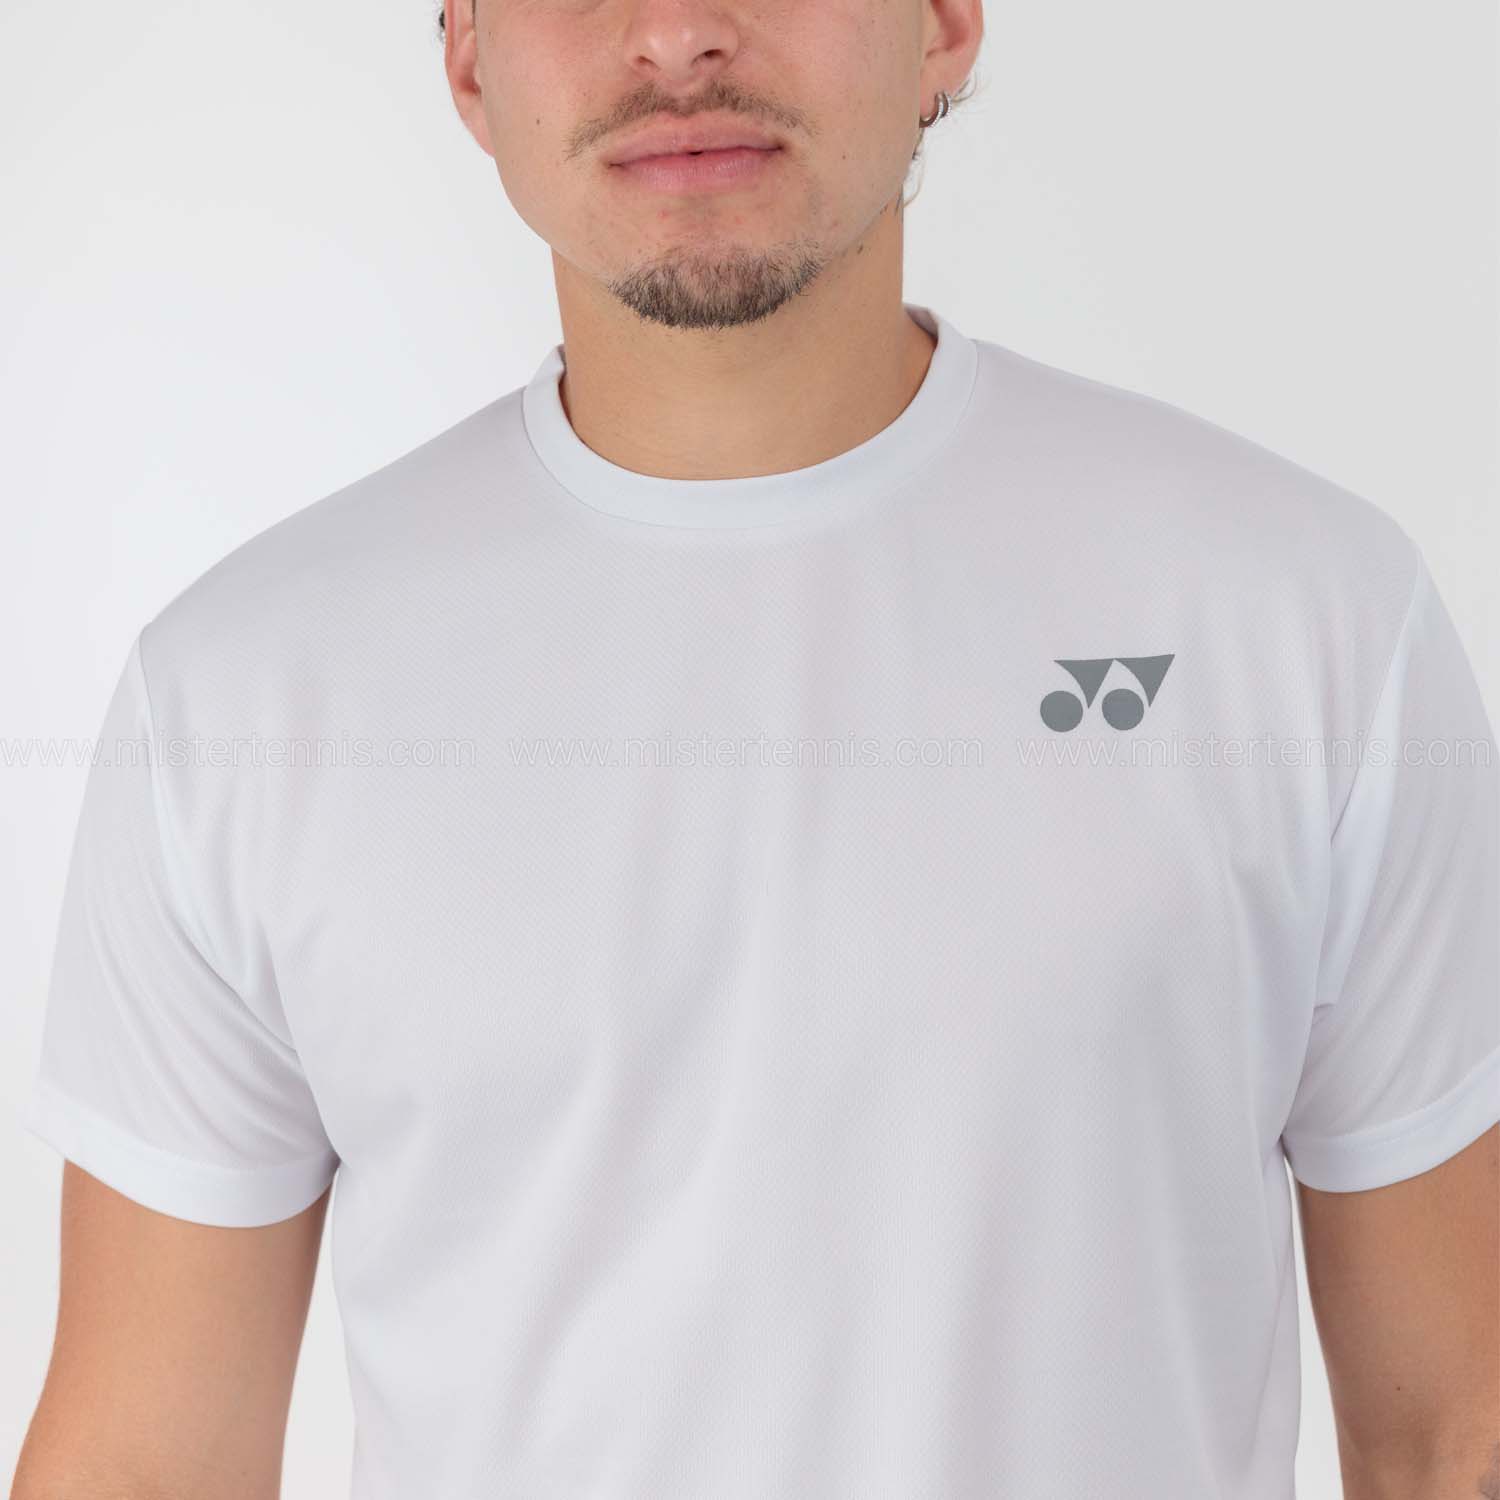 Yonex Practice T-Shirt - White